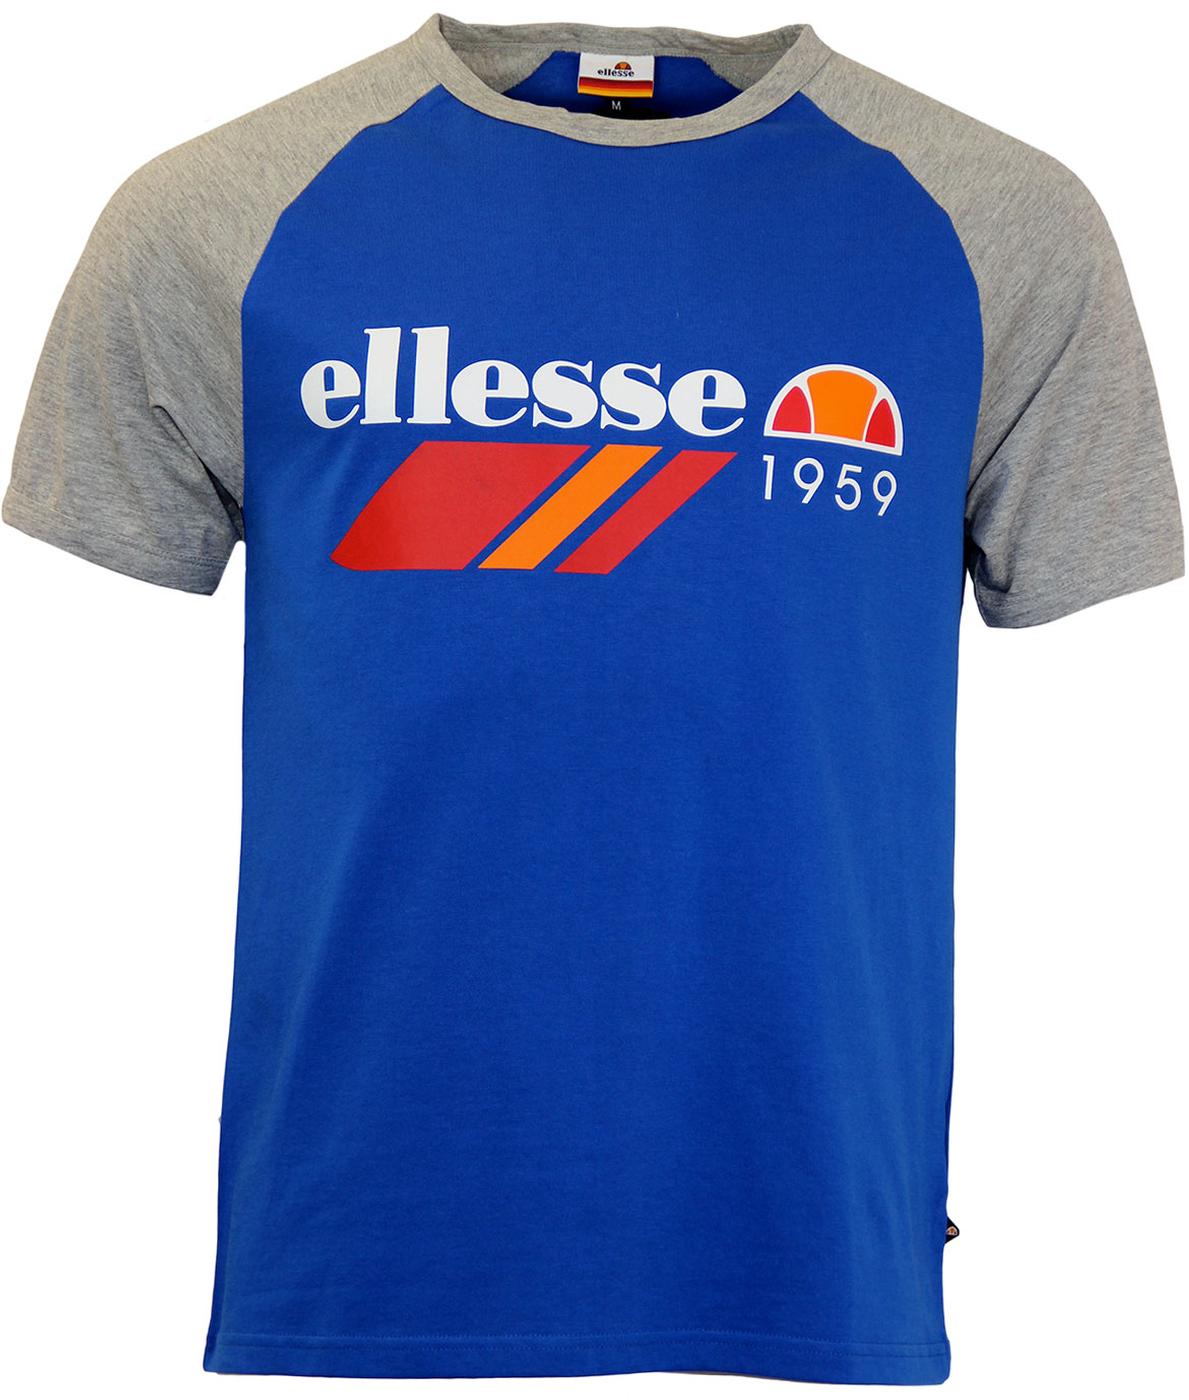 ELLESSE Dante Retro 70s Vintage T-Shirt (TS)